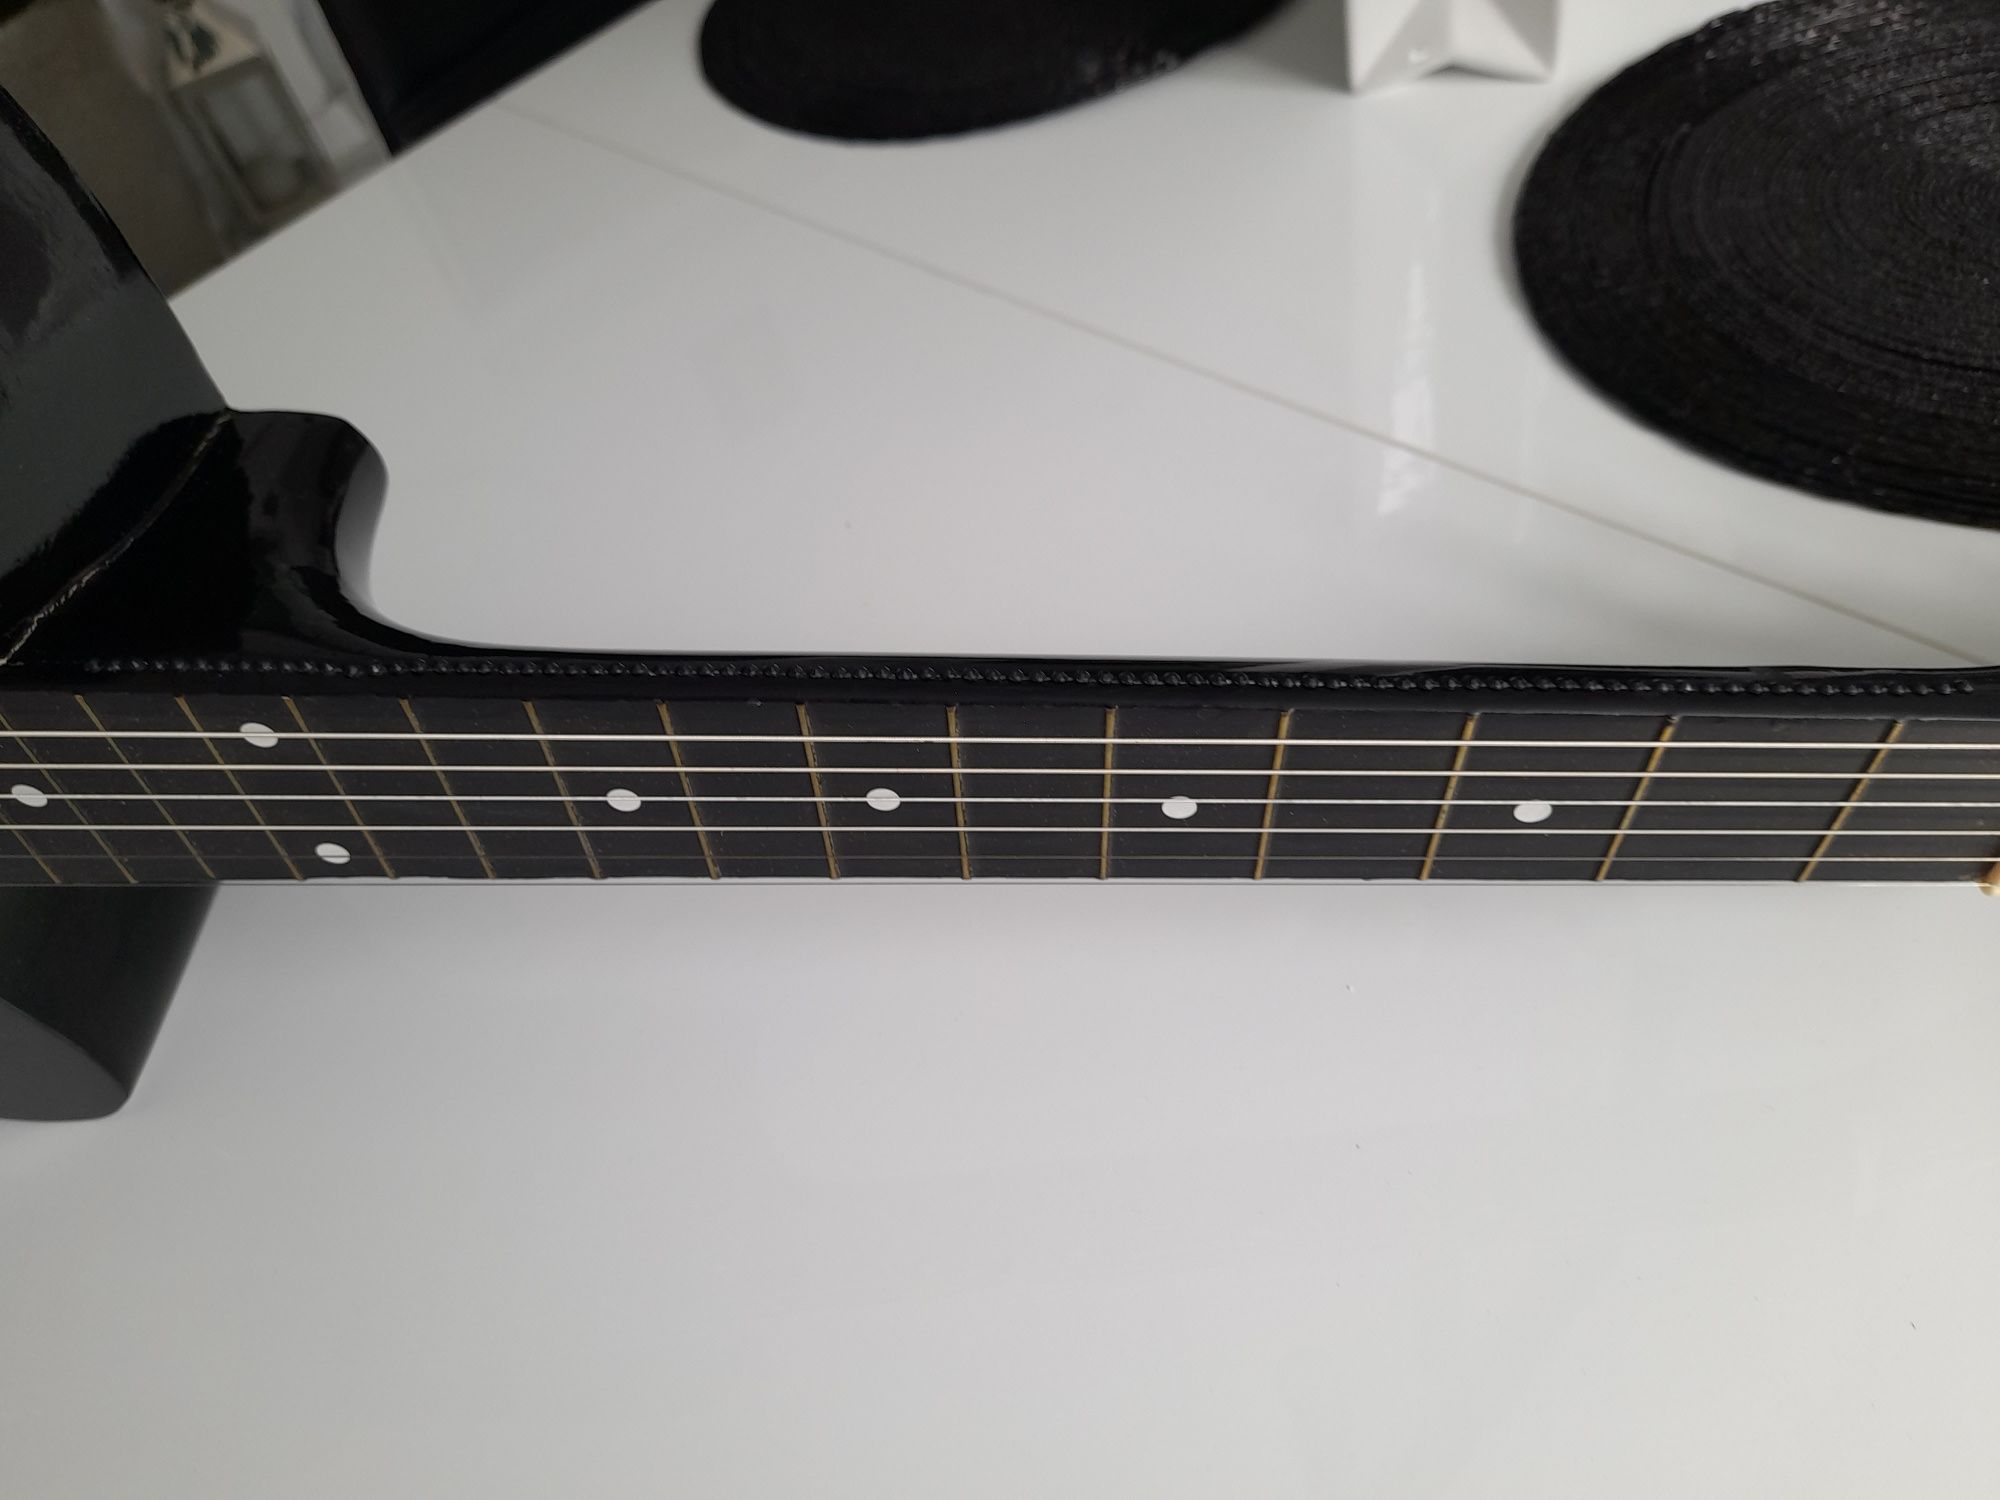 Gitara akustyczna Modena K-30 rozmiar 4/4 czarny połysk